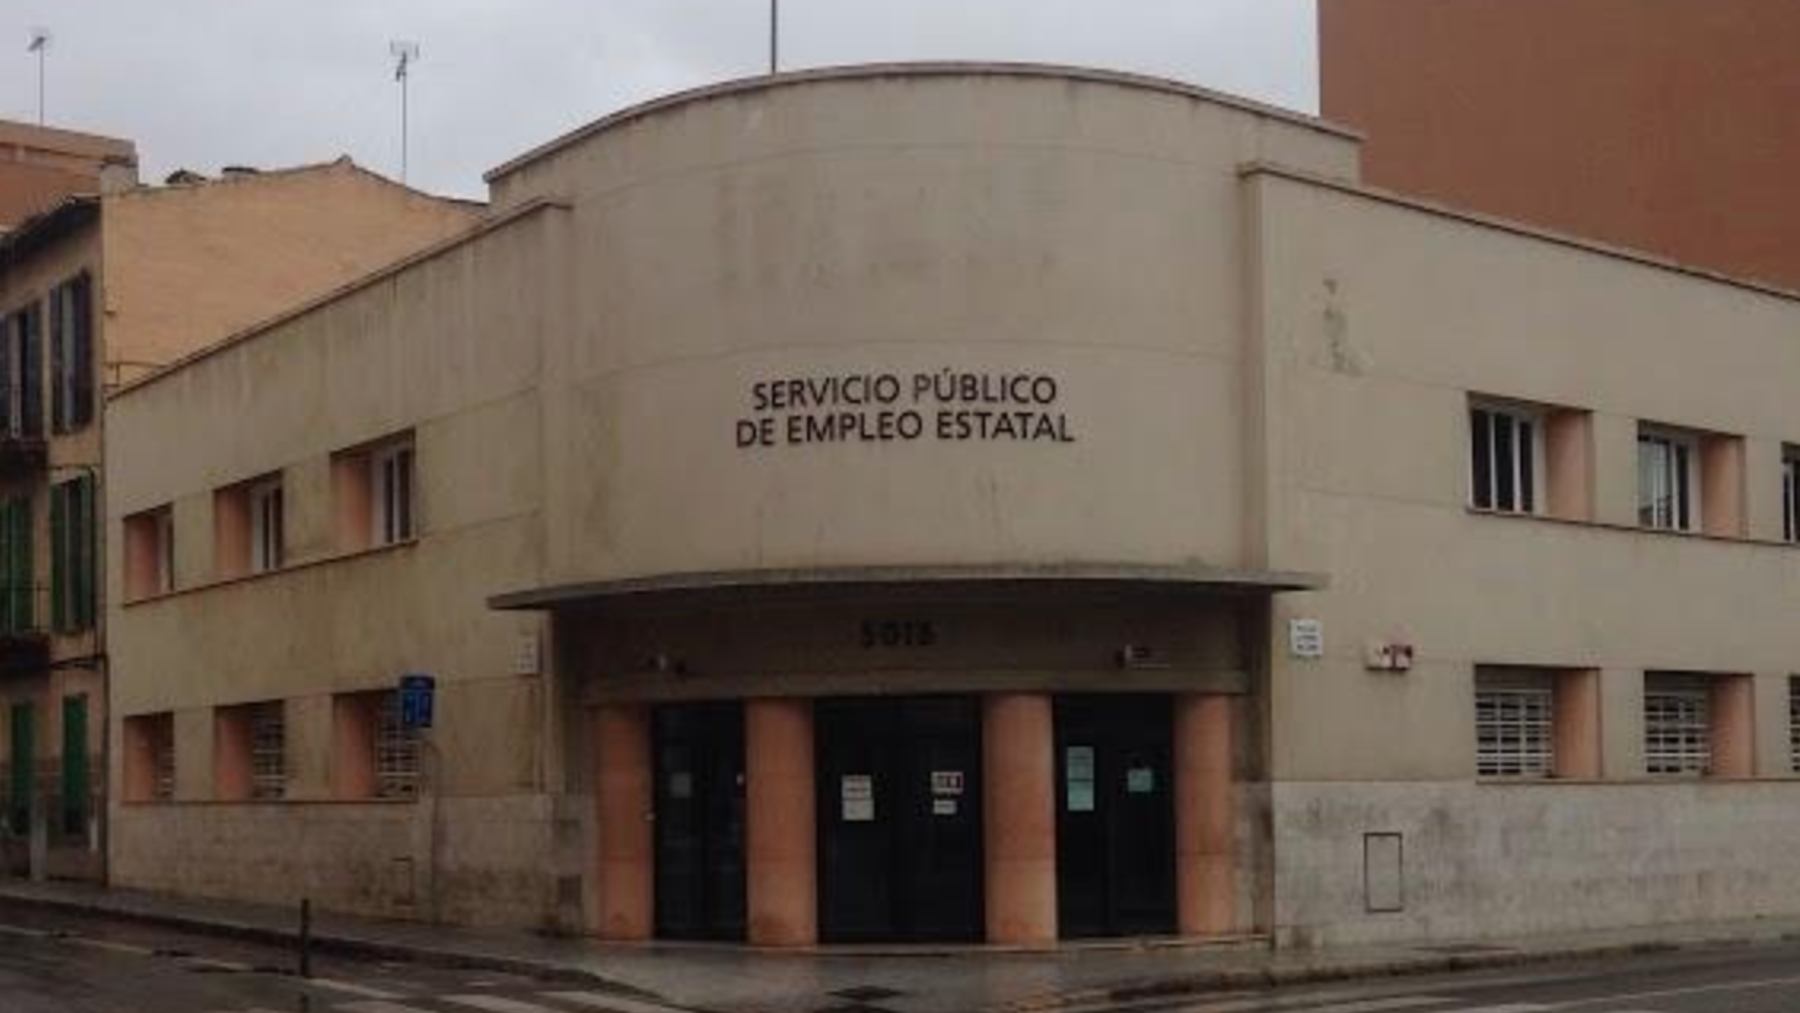 Oficina del SEPE en la calle Mateu Enric Lladó de Palma.